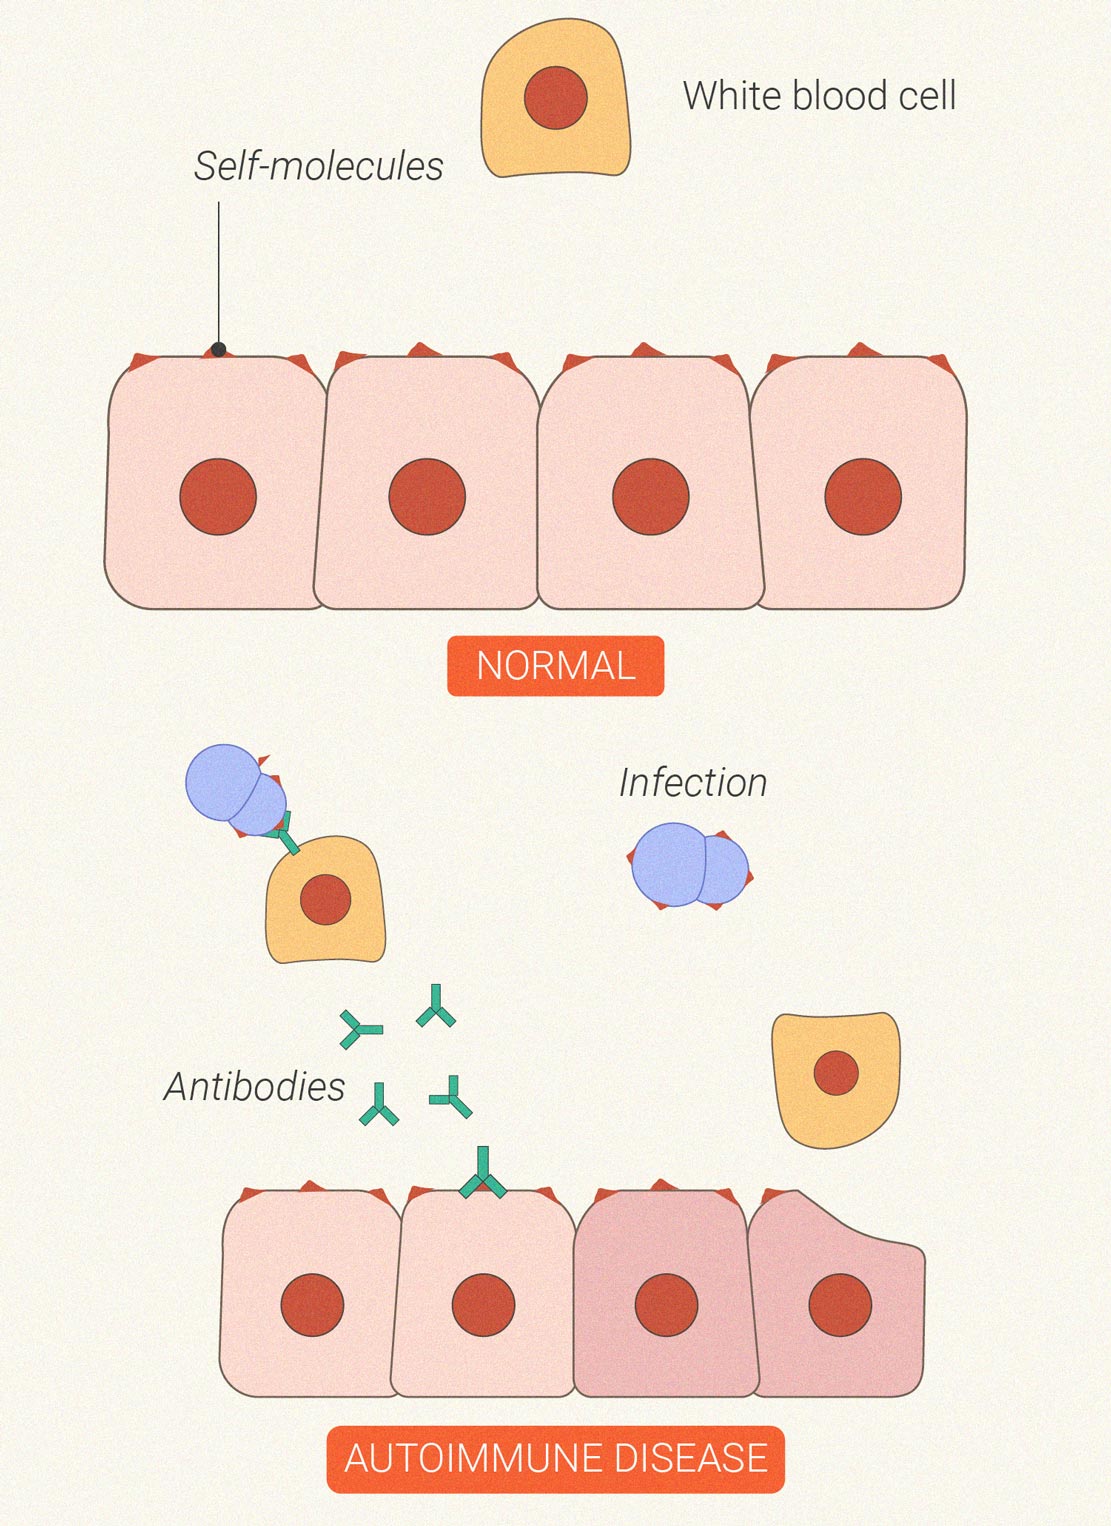 Hoe beïnvloedt wiet het immuunsysteem?